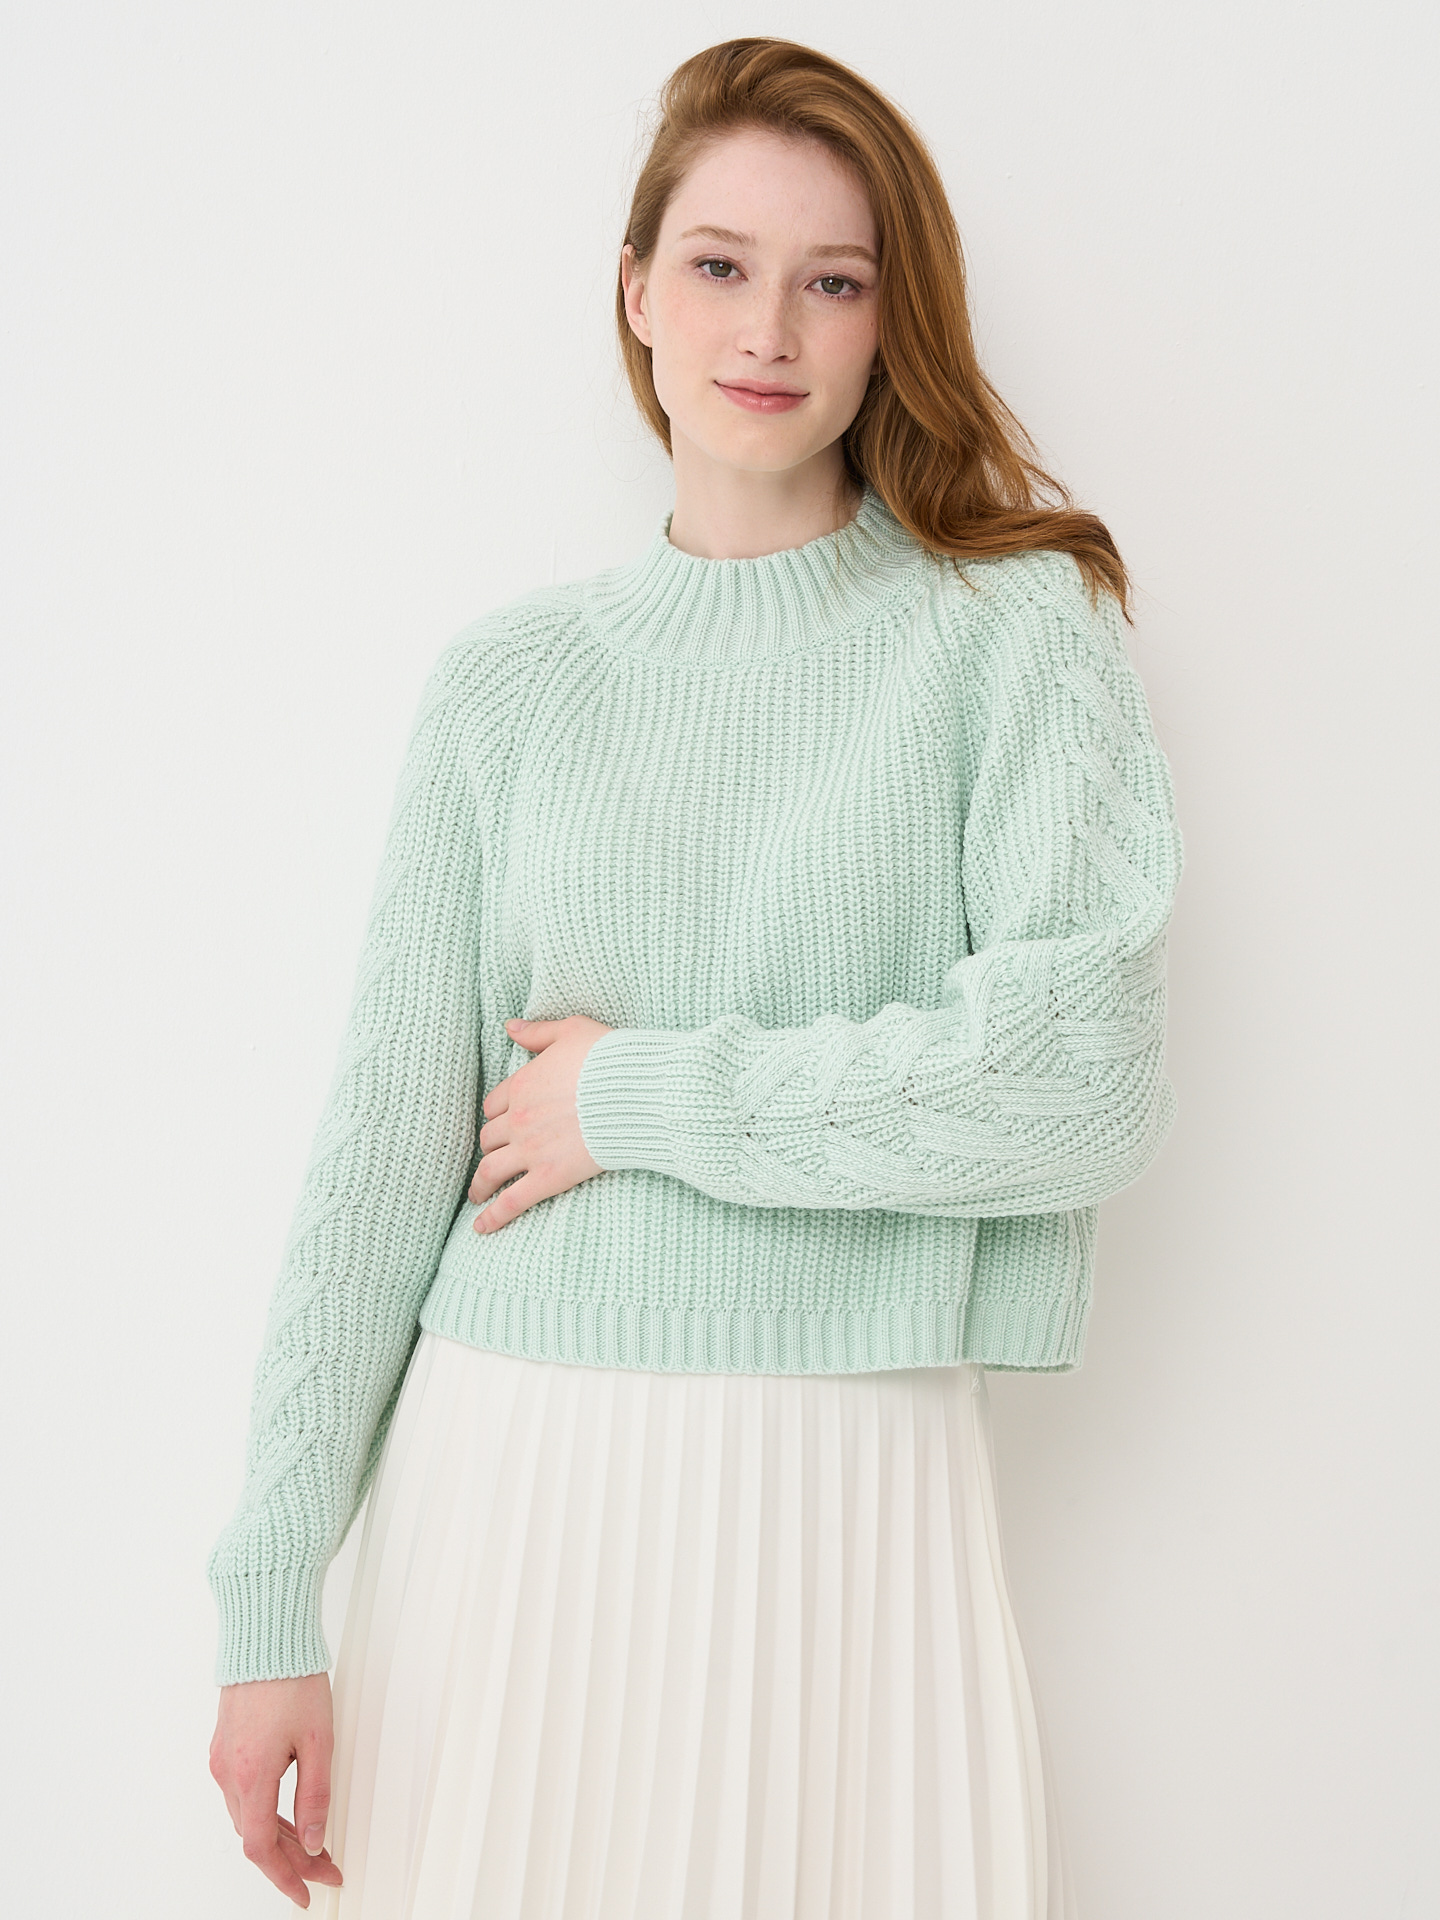 Женский свитер BE YOU зеленый 46-48 размер.